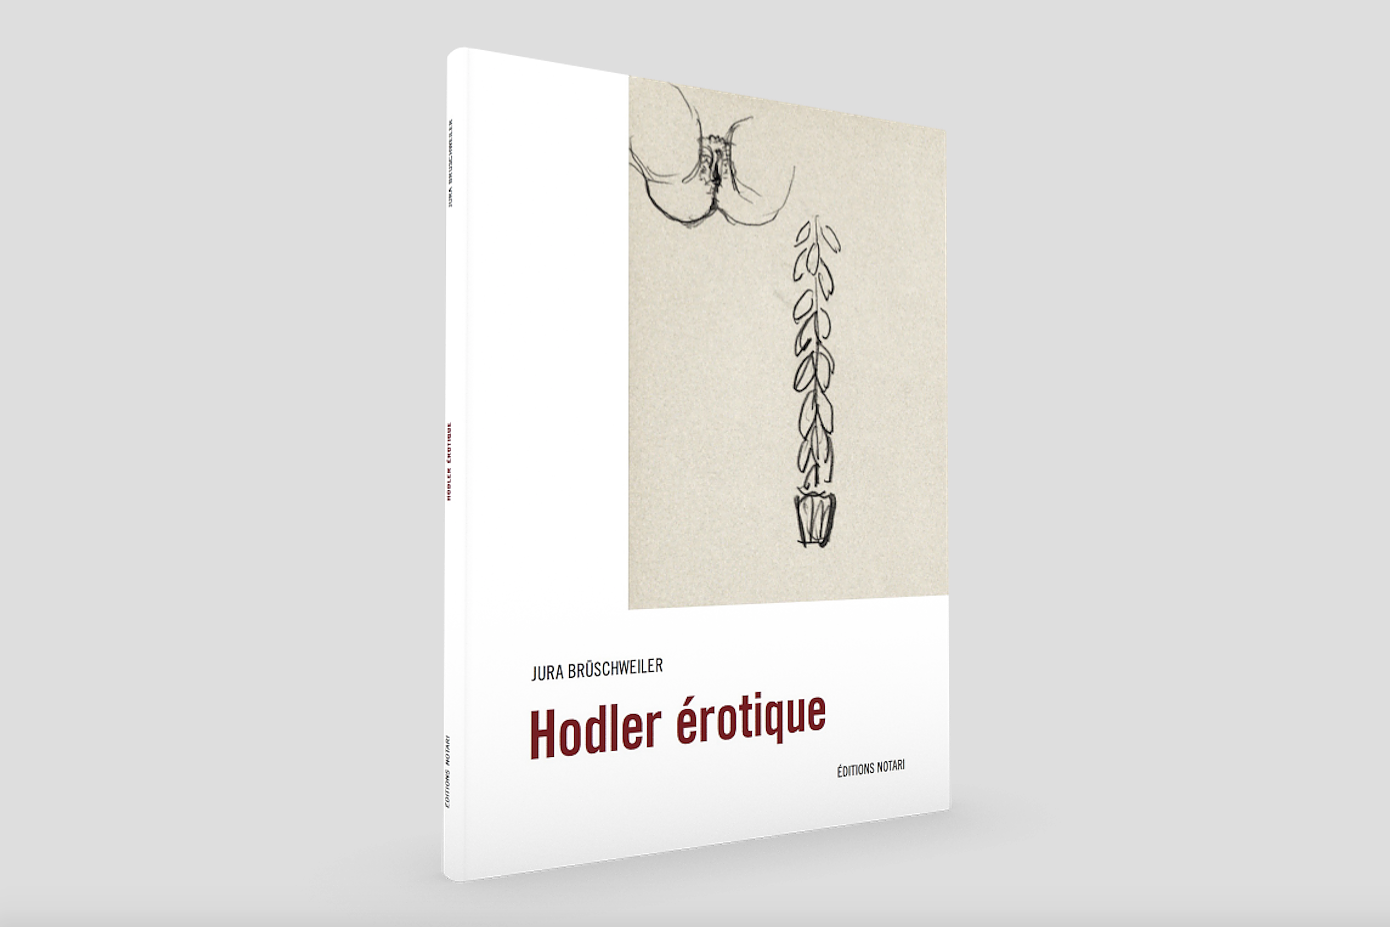 Couverture du livre "Hodler érotique", de Jura Brüschweiler, éditions Notari [Editions Notari/Musée d'art et d'histoire Genève]